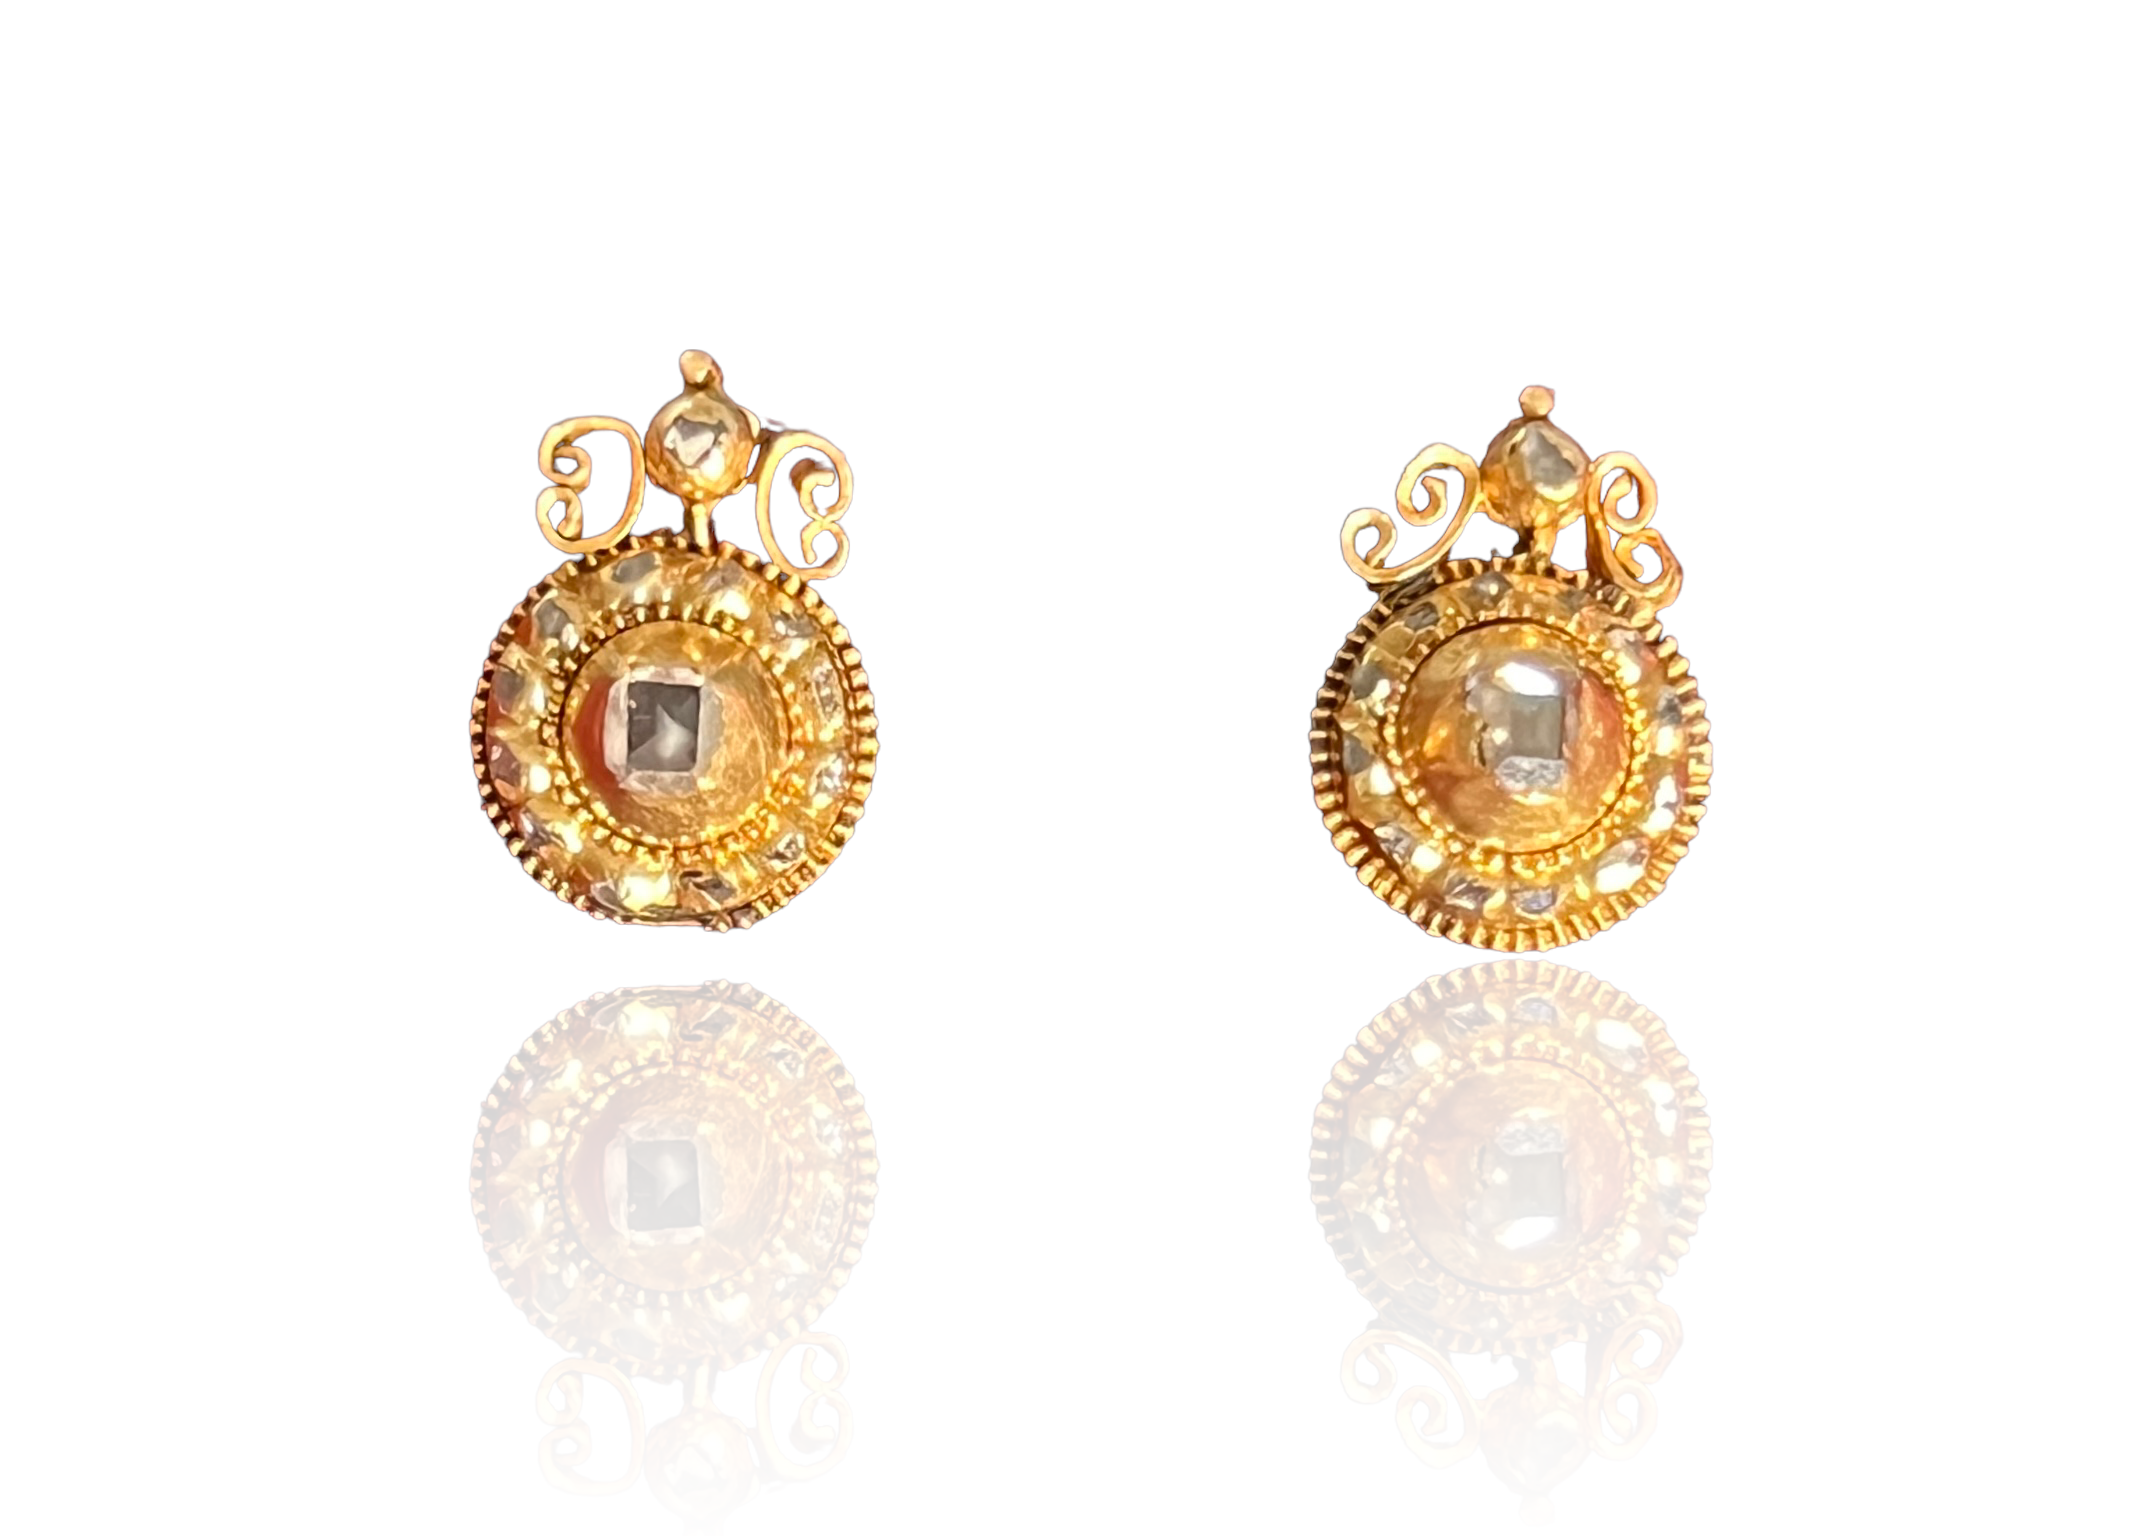 2 gram gold earrings | daily wear gold earrings | light weight gold earrings  | small earrings gold - YouTube